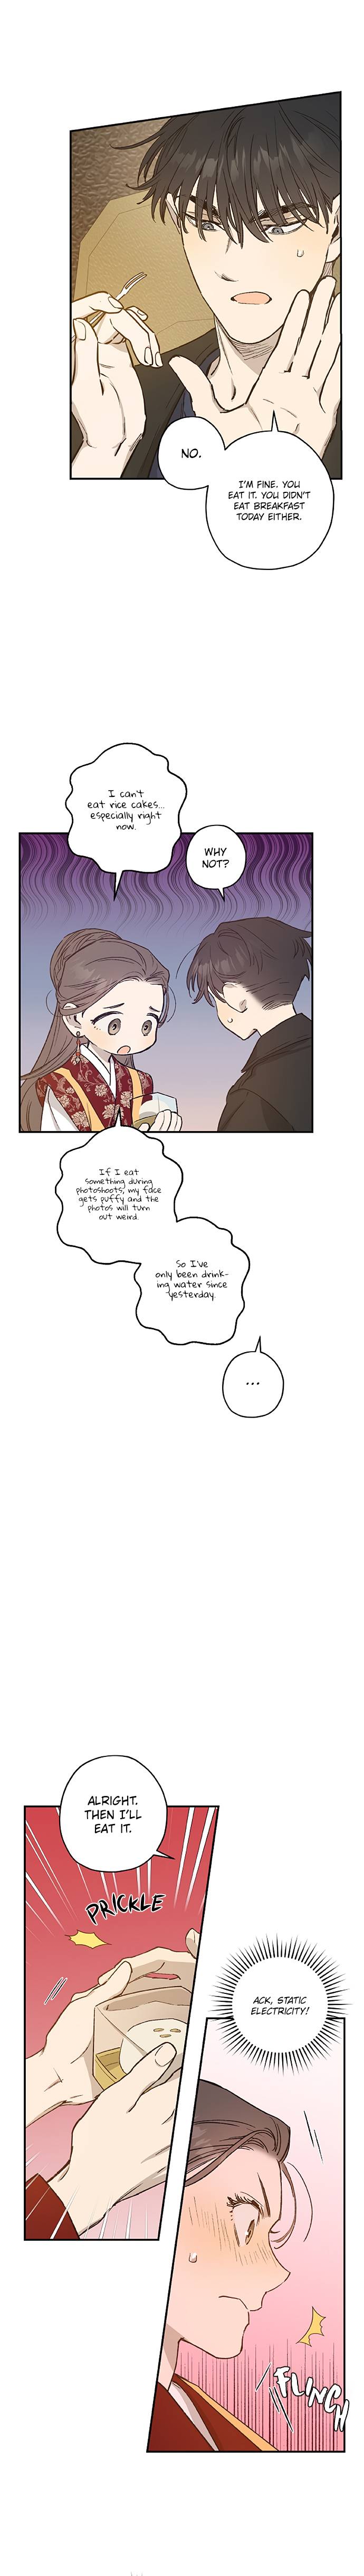 Onsaemiro - Chapter 24 Page 8